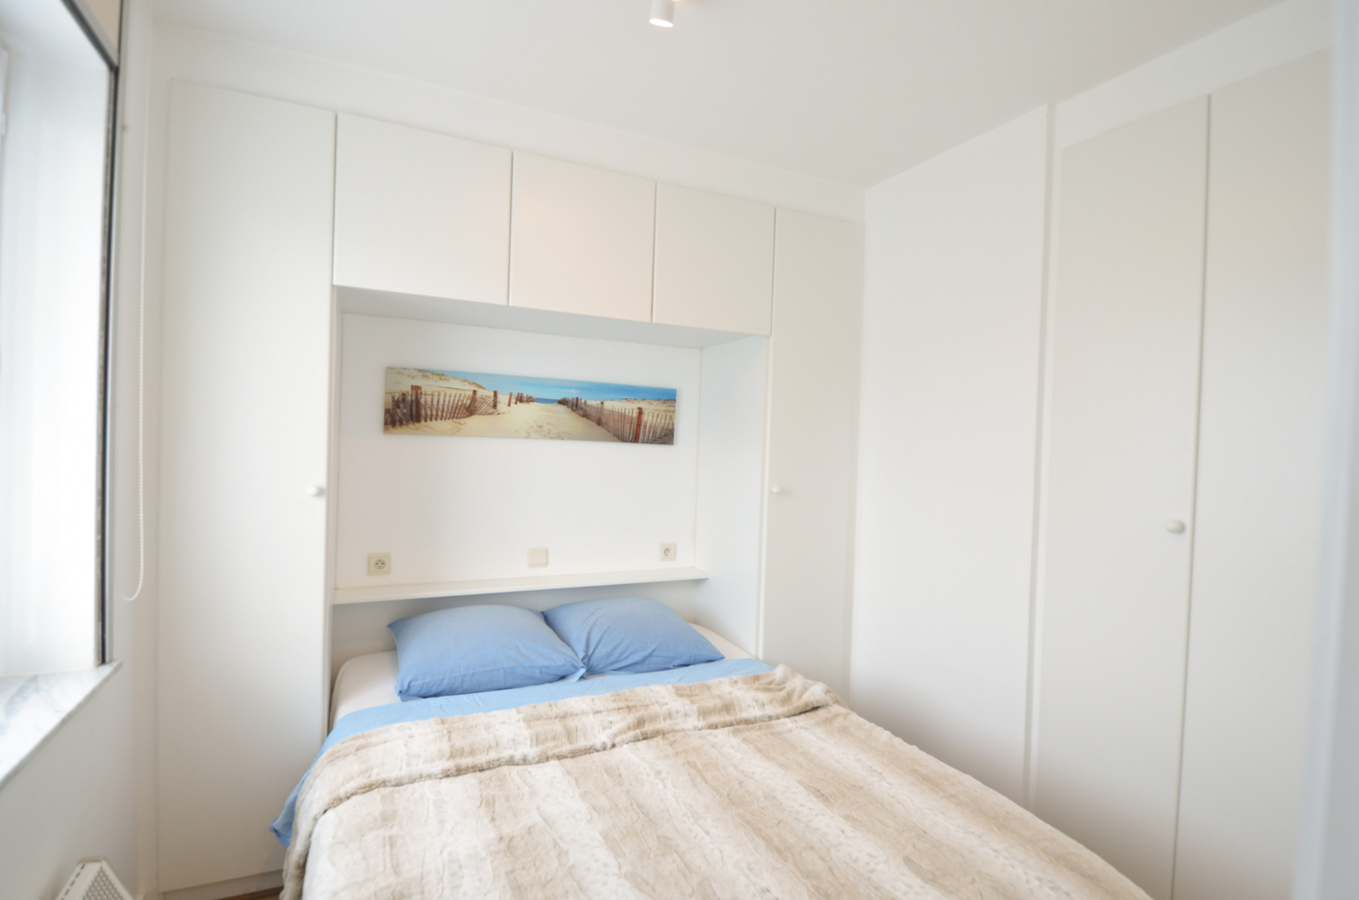 Recent gerenoveerd appartement met &#233;&#233;n slaapkamer op 200m van zee! 